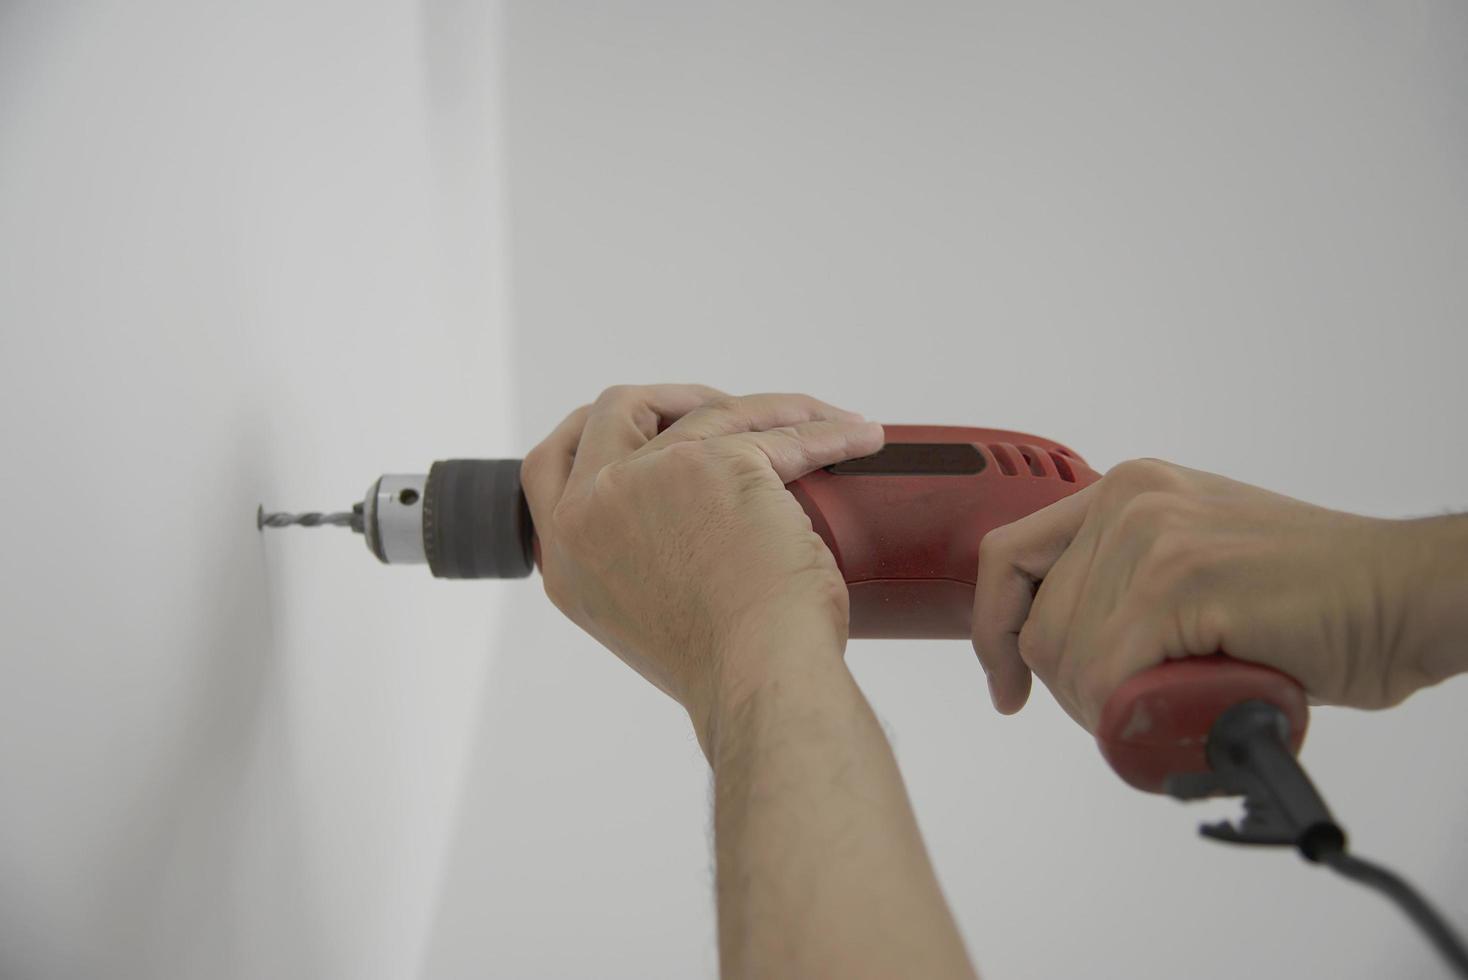 homme utilisant un dispositif de perceuse à main pour installer des meubles de maison sur un nouveau mur blanc - concept d'installation de meubles de maison bricolage photo